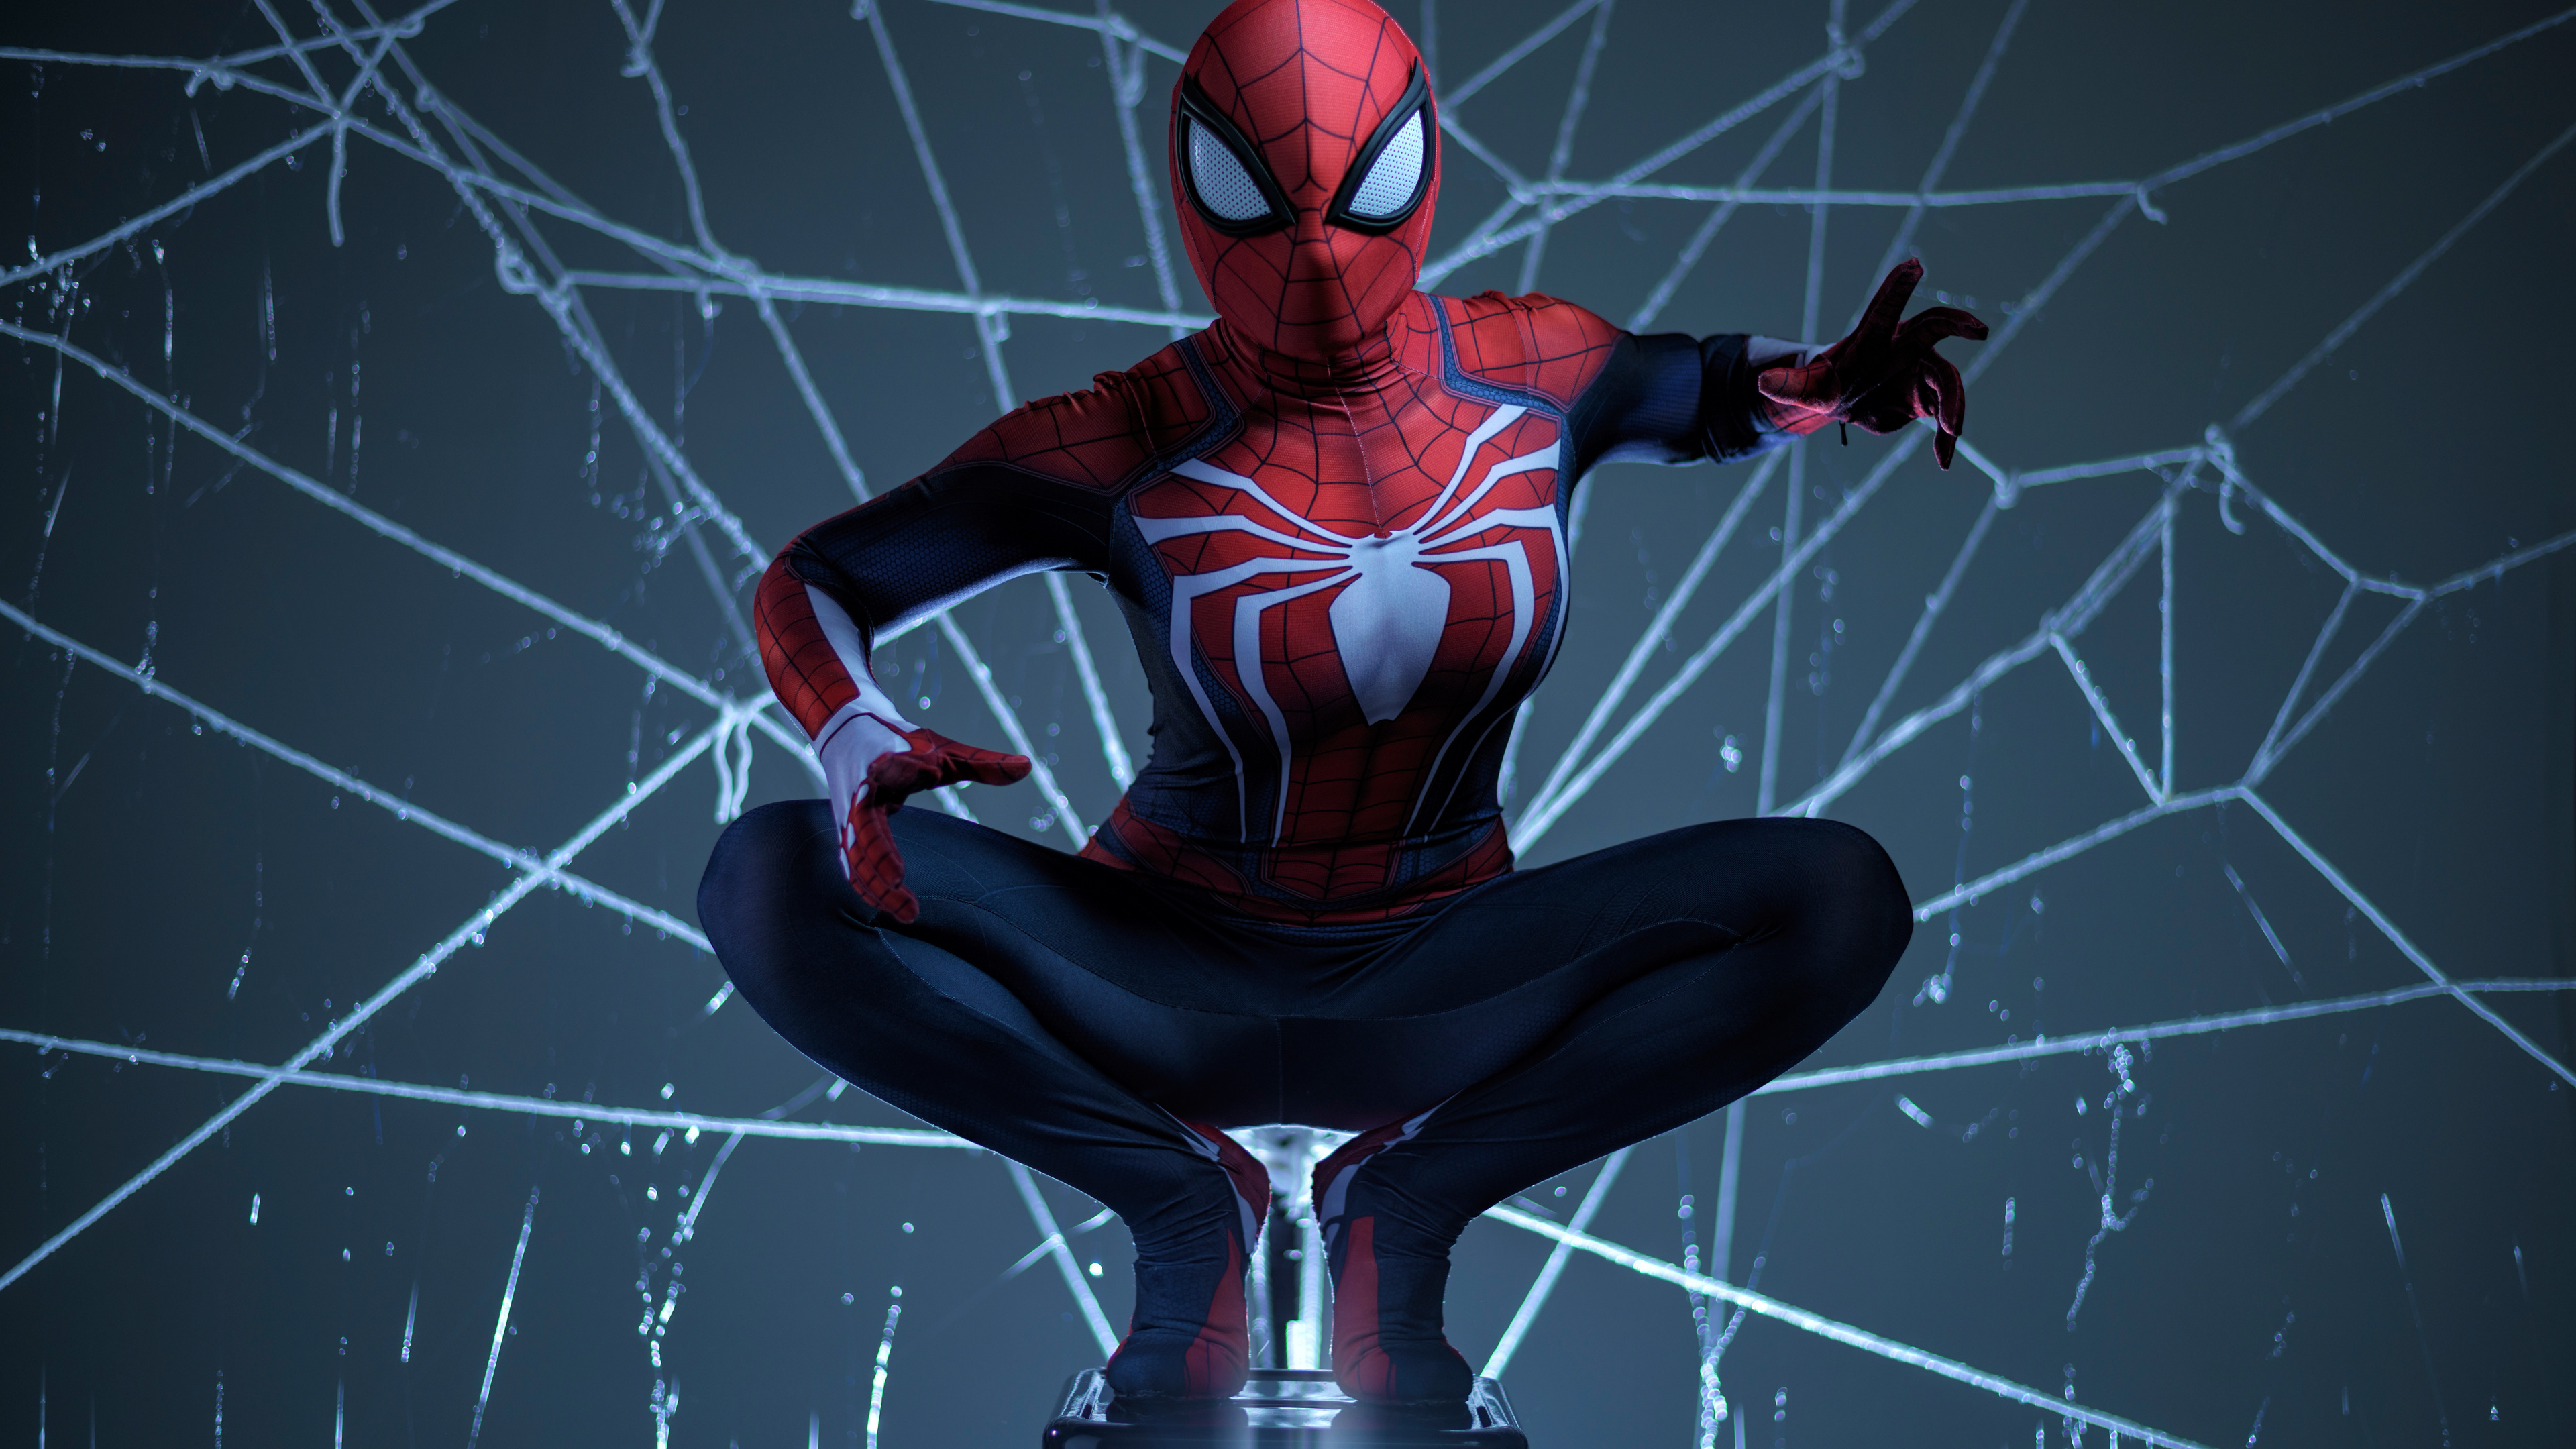 fond d'écran 8k,homme araignée,personnage fictif,super héros,supervillain,illustration